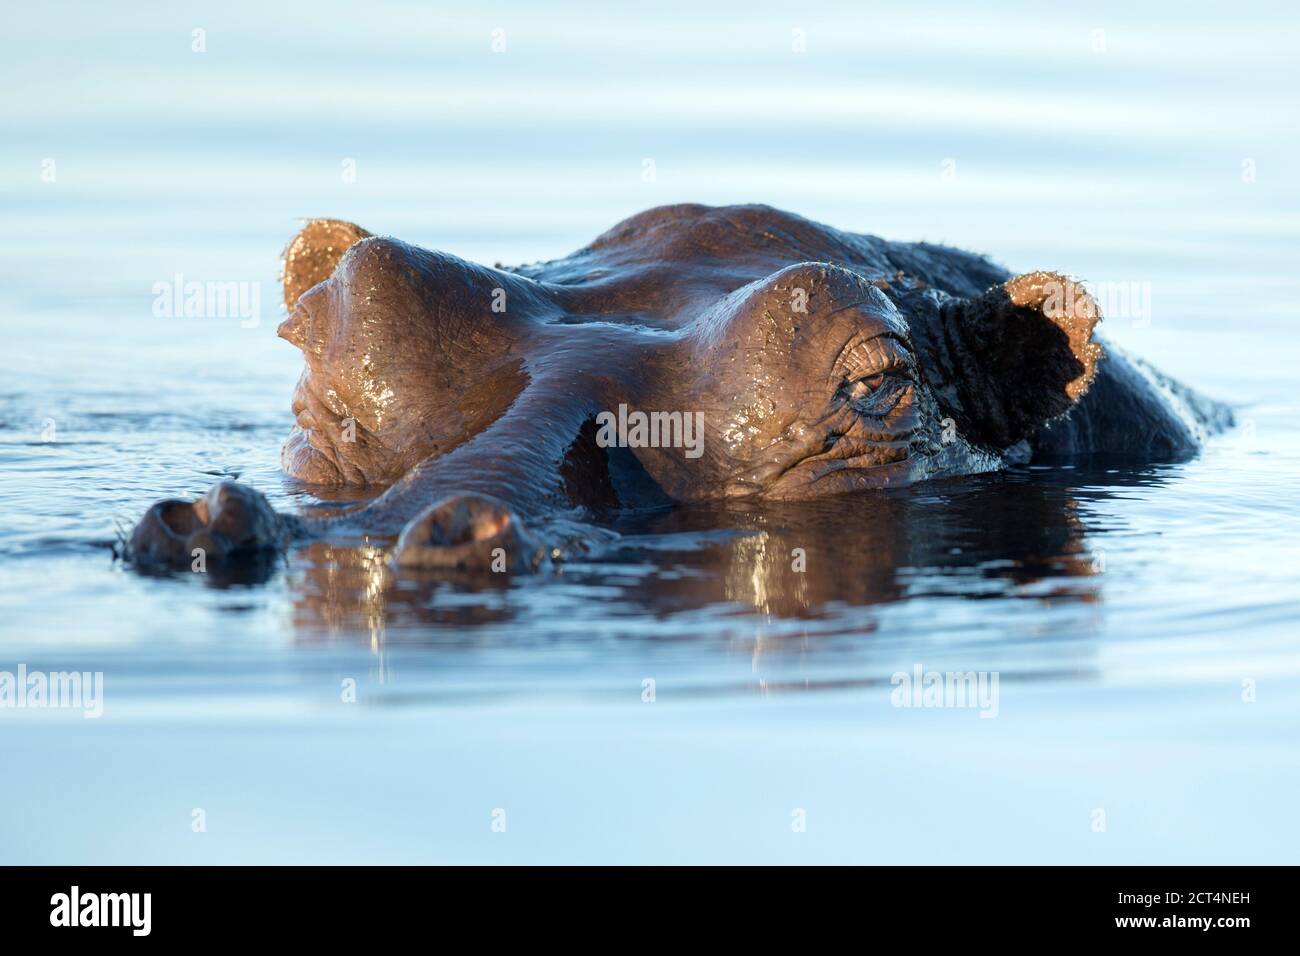 A Hippo élève sa tête au-dessus de l'eau dans le parc national de Chobe, Kasane, Botswana Banque D'Images